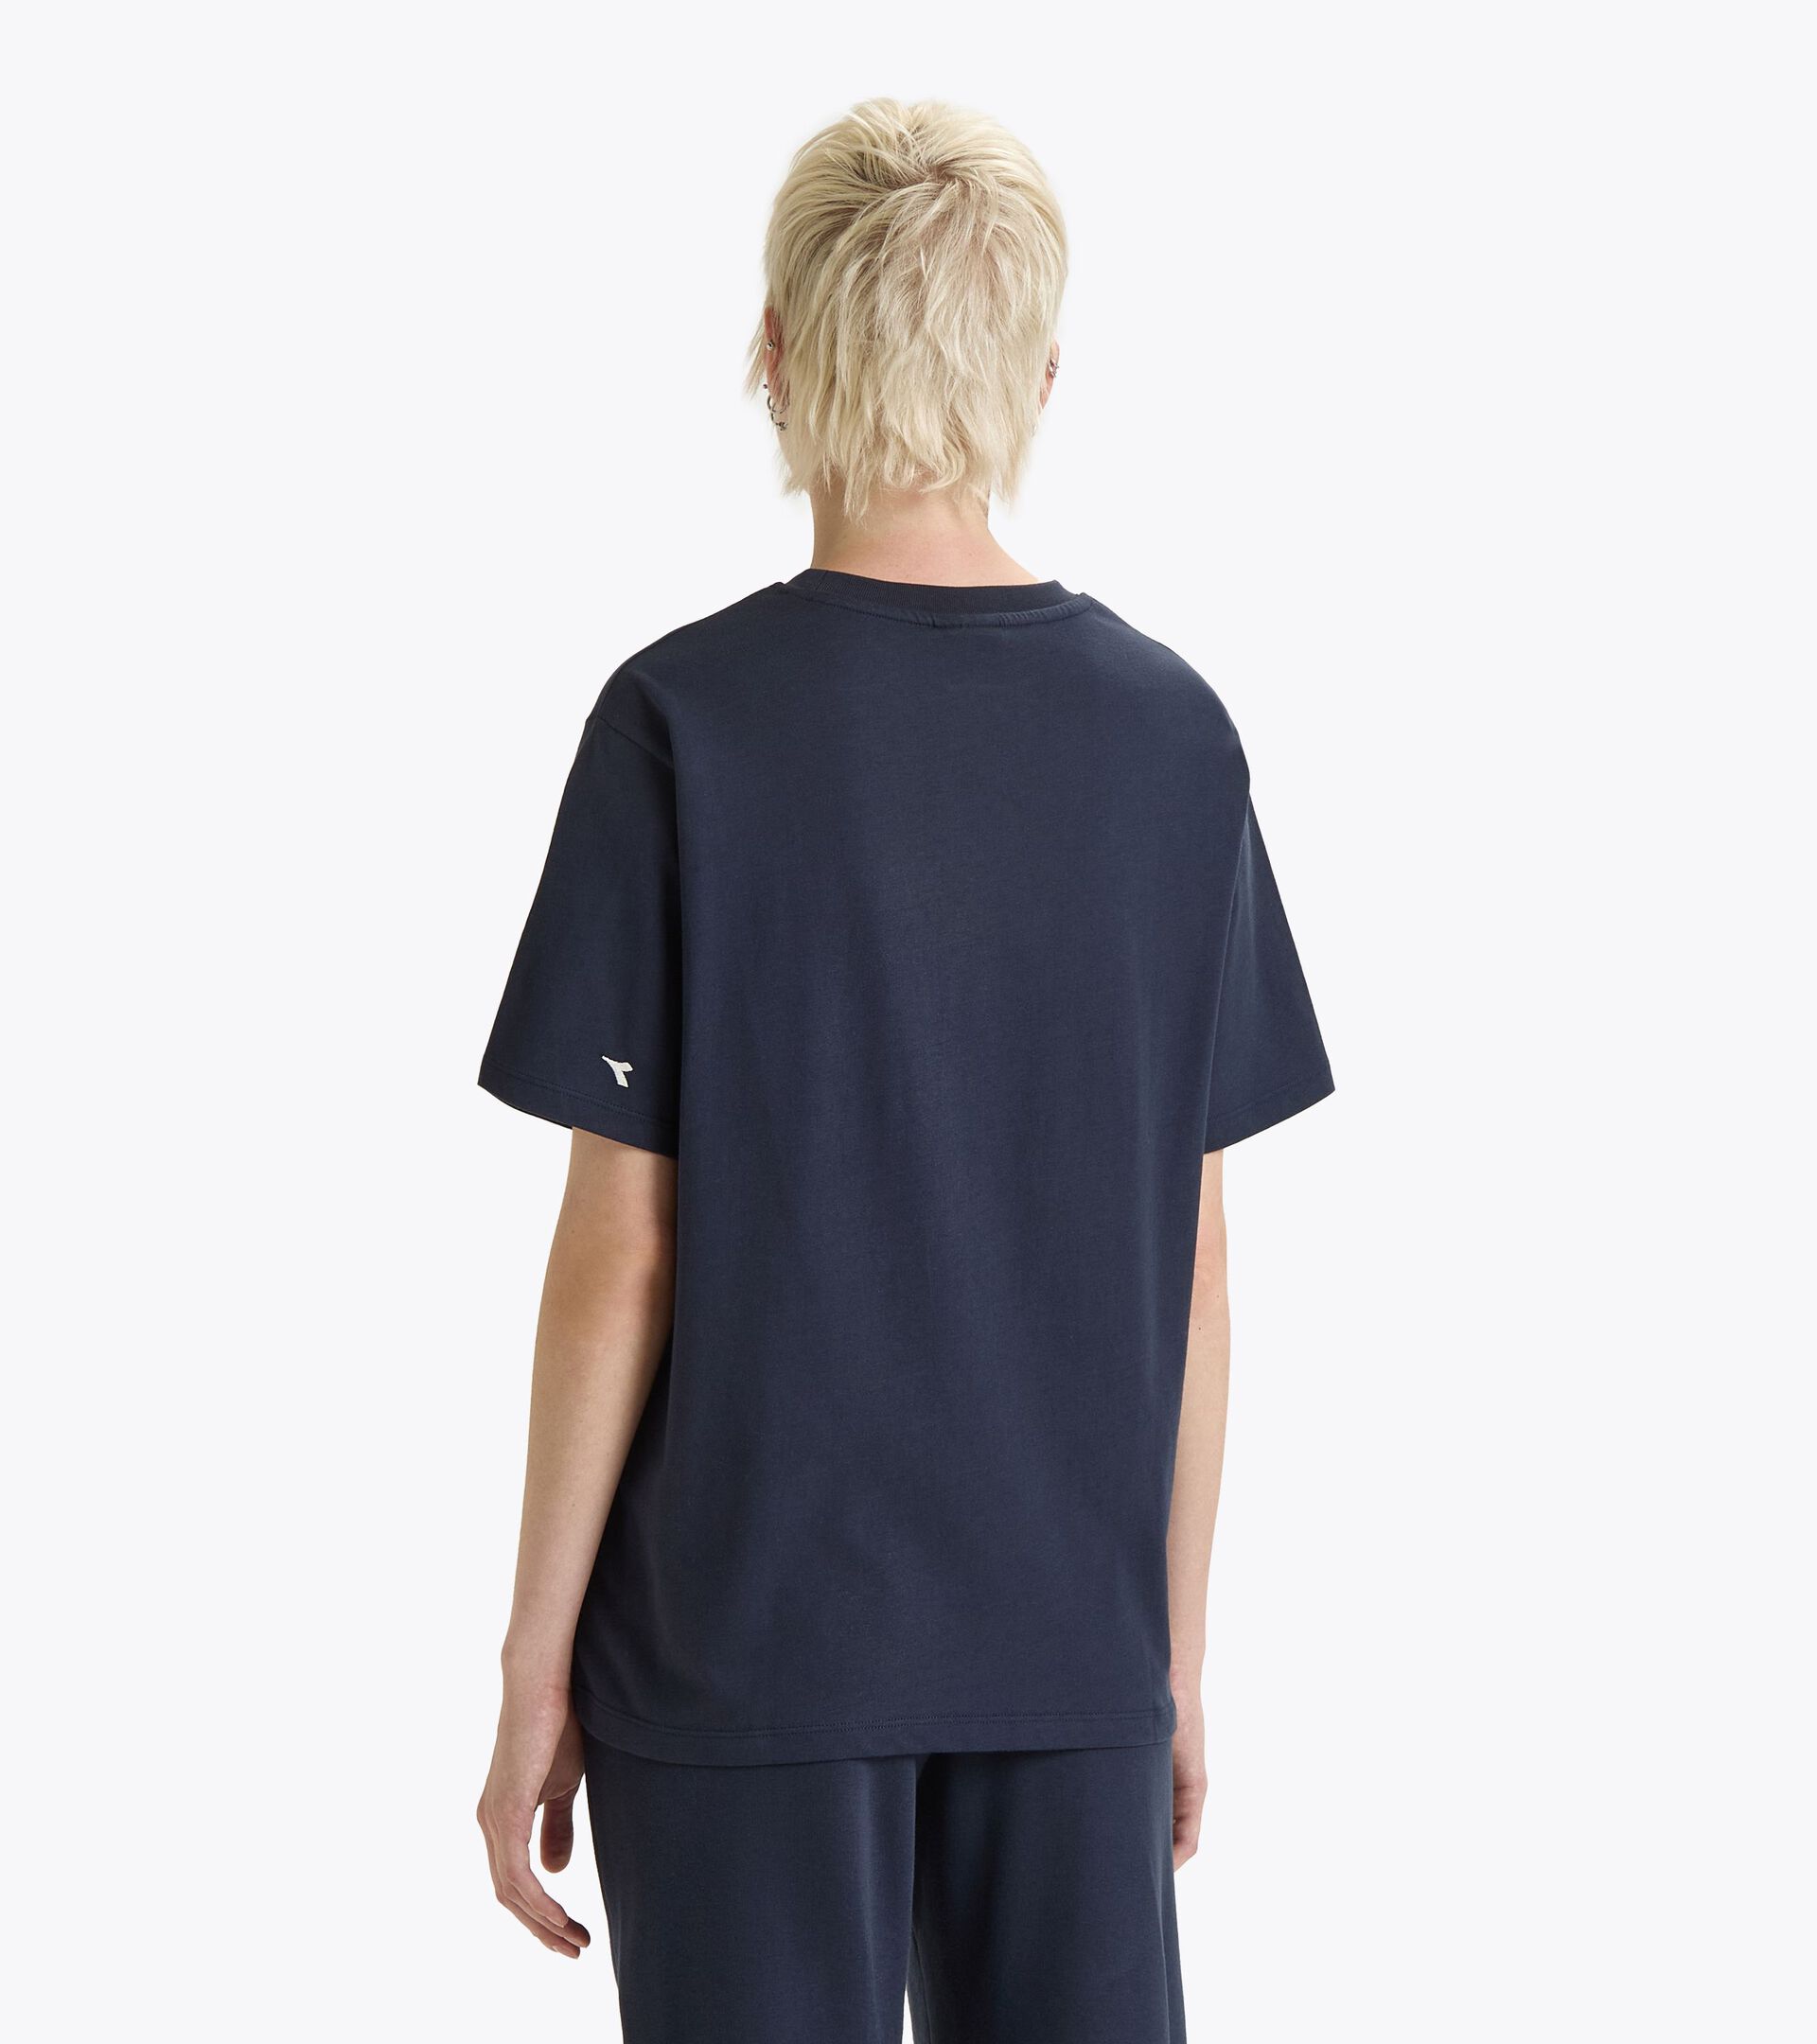 T-shirt - Gender Neutral T-SHIRT SS ATHL. LOGO BLU PROFONDO - Diadora